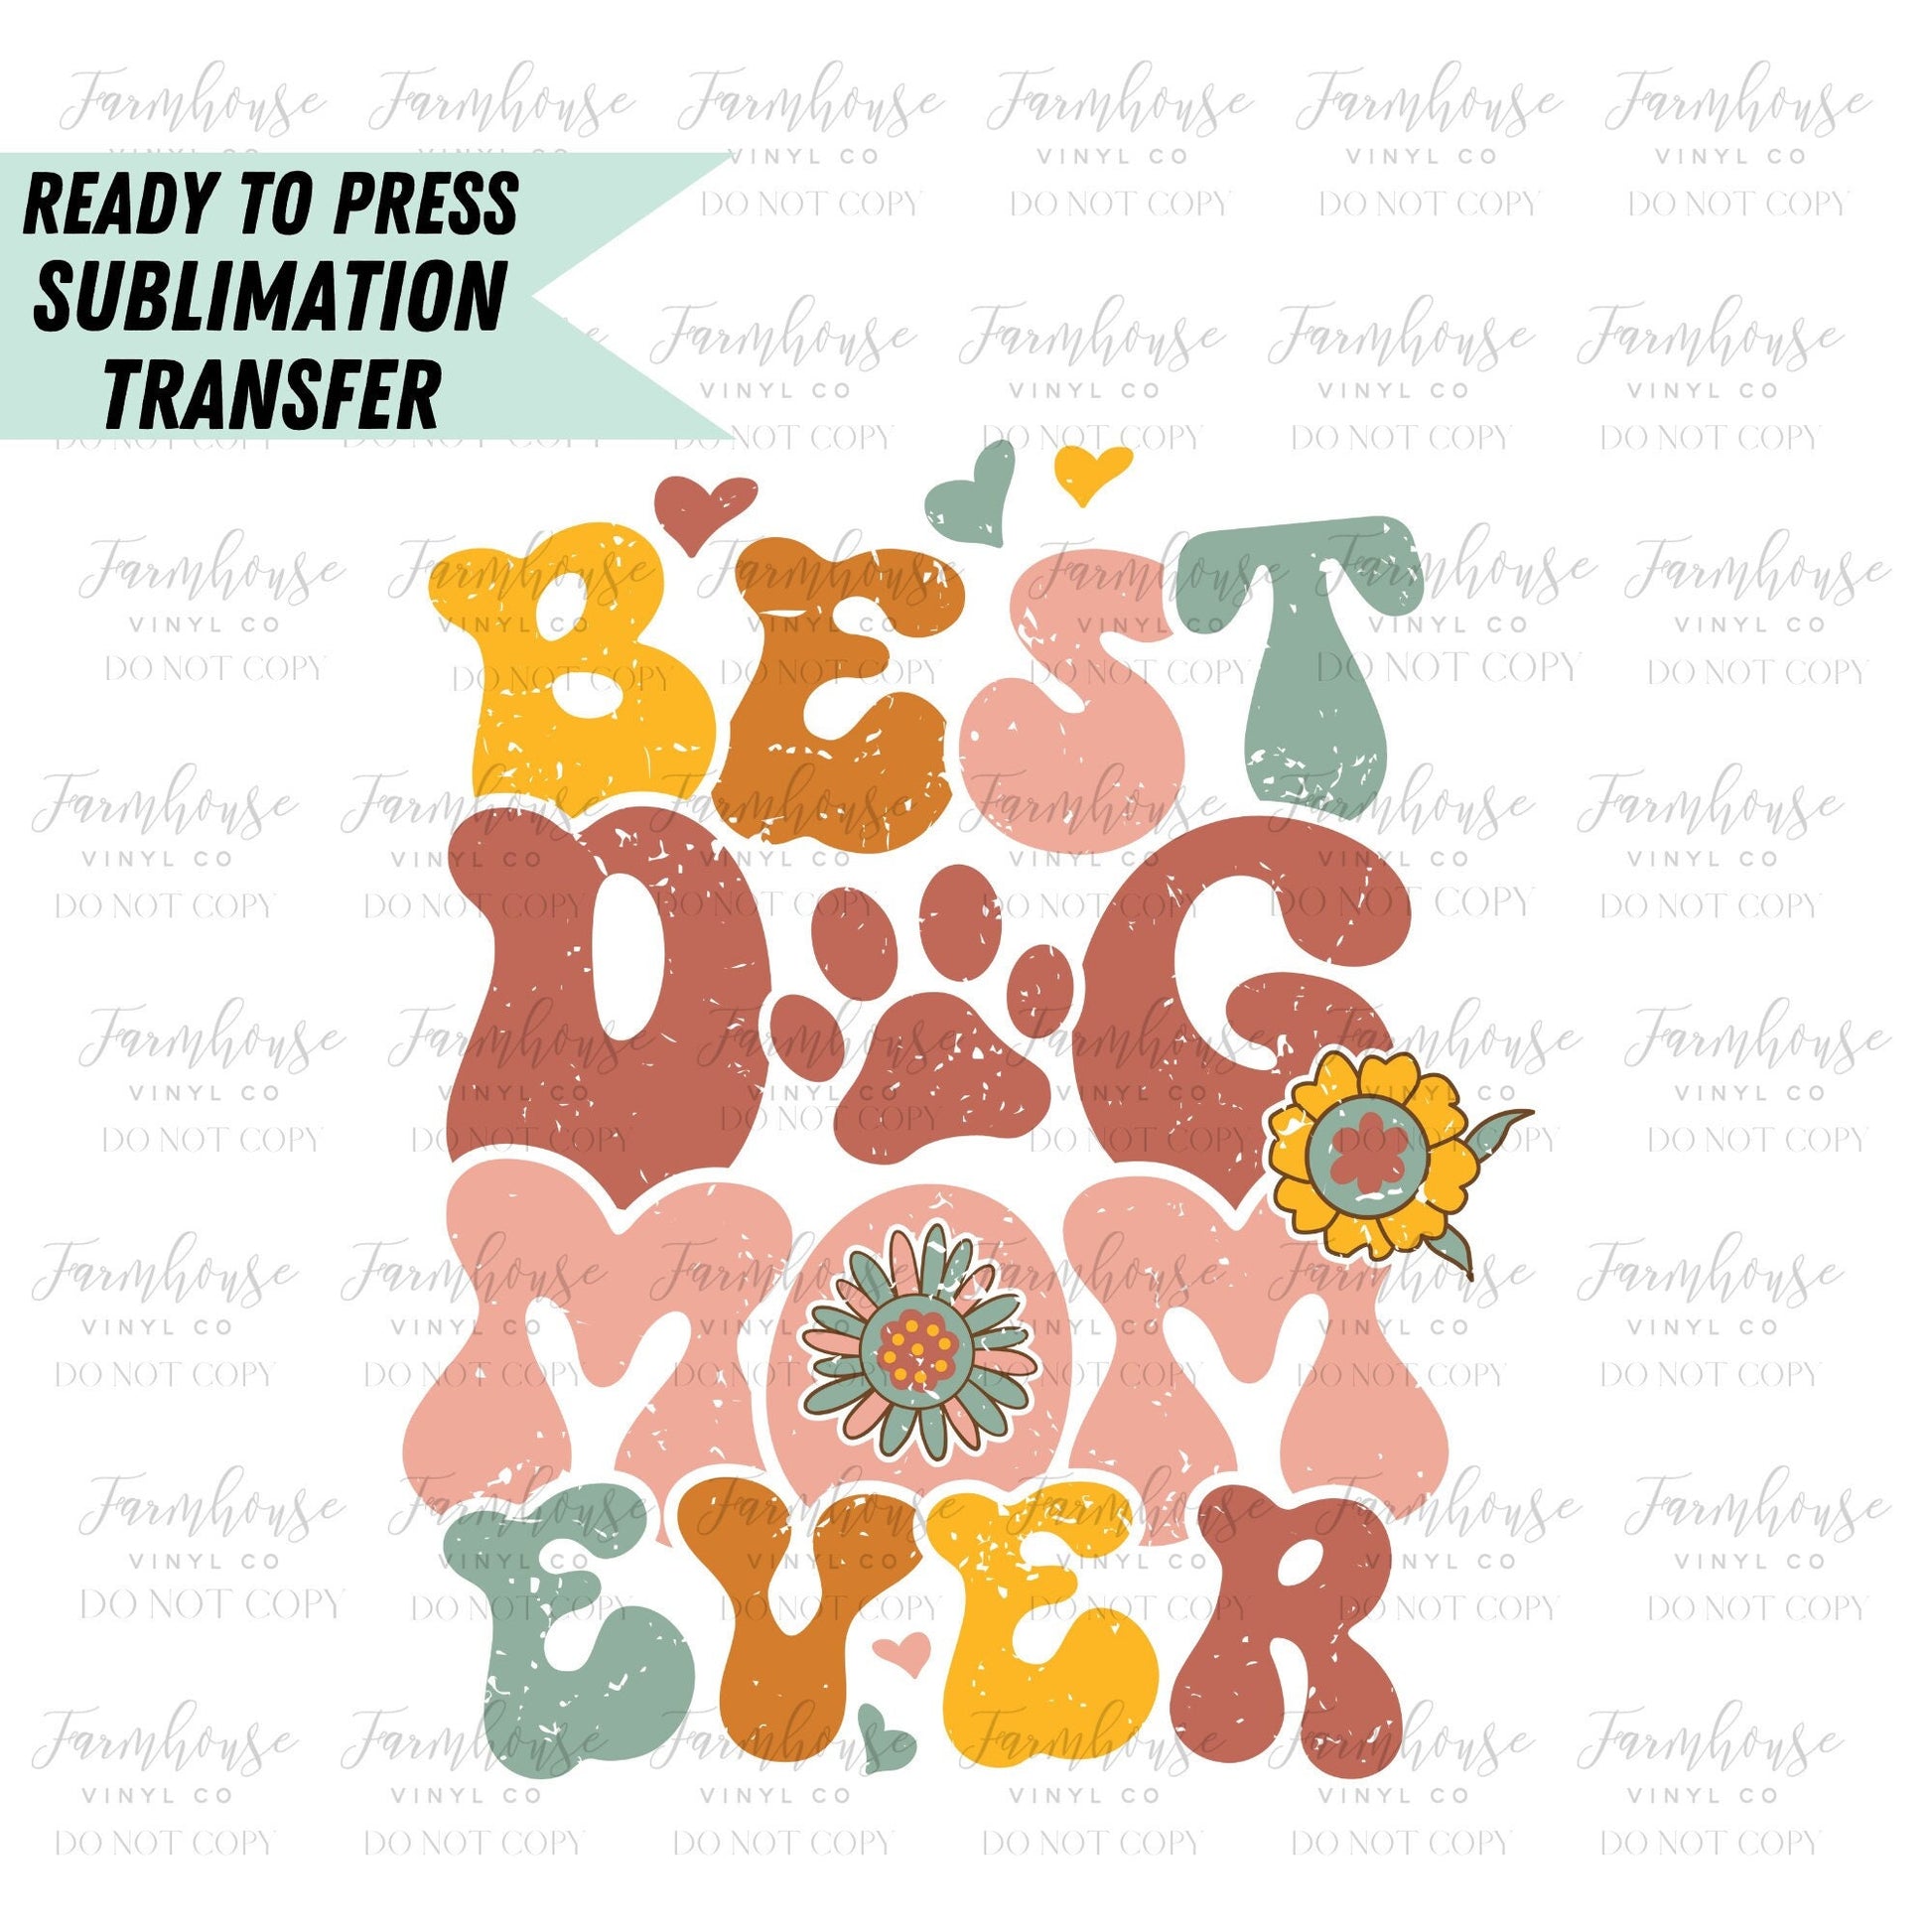 Best Dog Mom Ever, Ready to Press Sublimation Transfer, Sublimation Transfers, Heat Transfer, Ready to Press, Retro Dog Design, Dog Parent - Farmhouse Vinyl Co